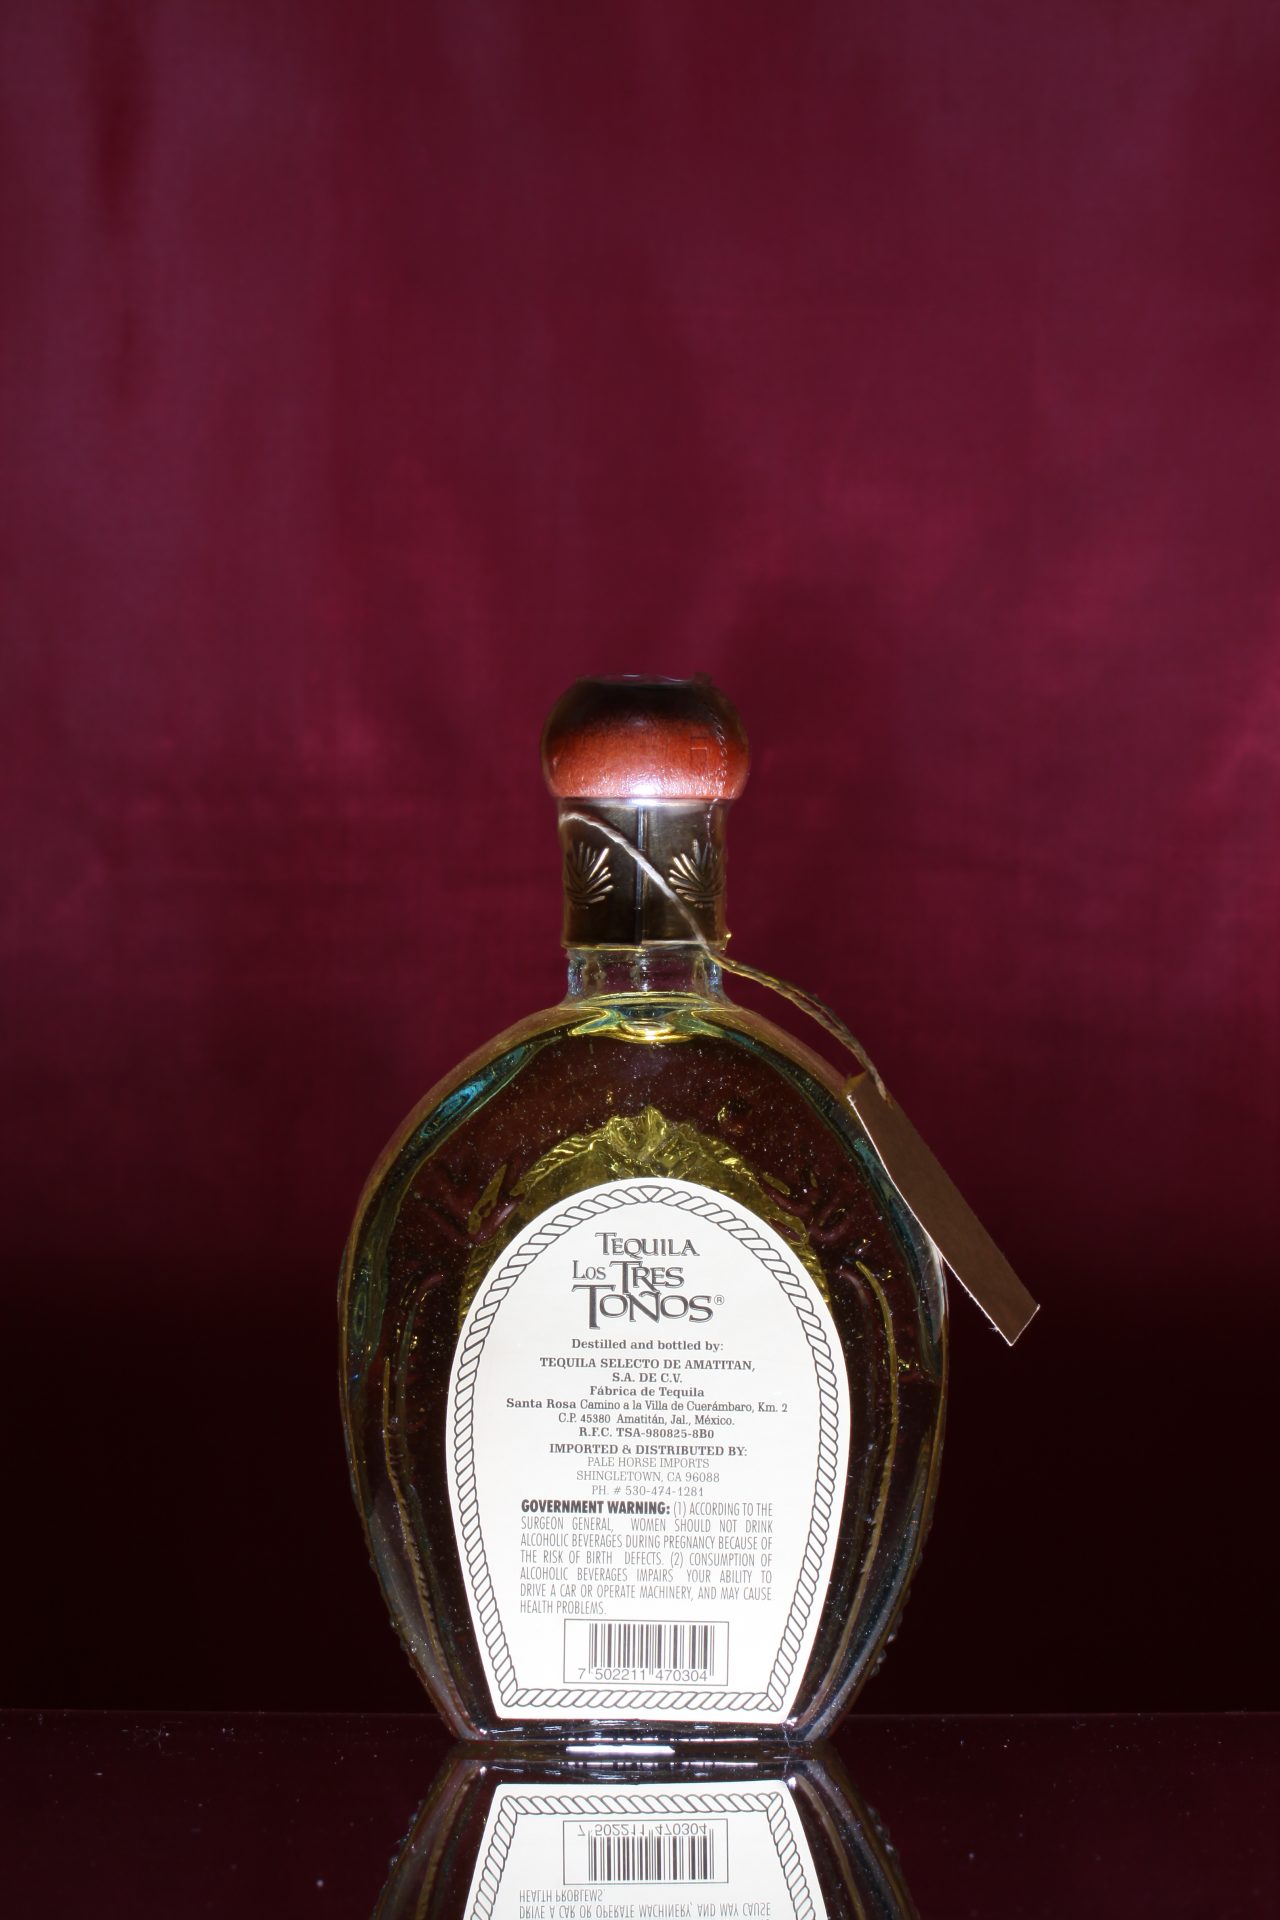 LOS TRES TONOS – The Liquor Collection